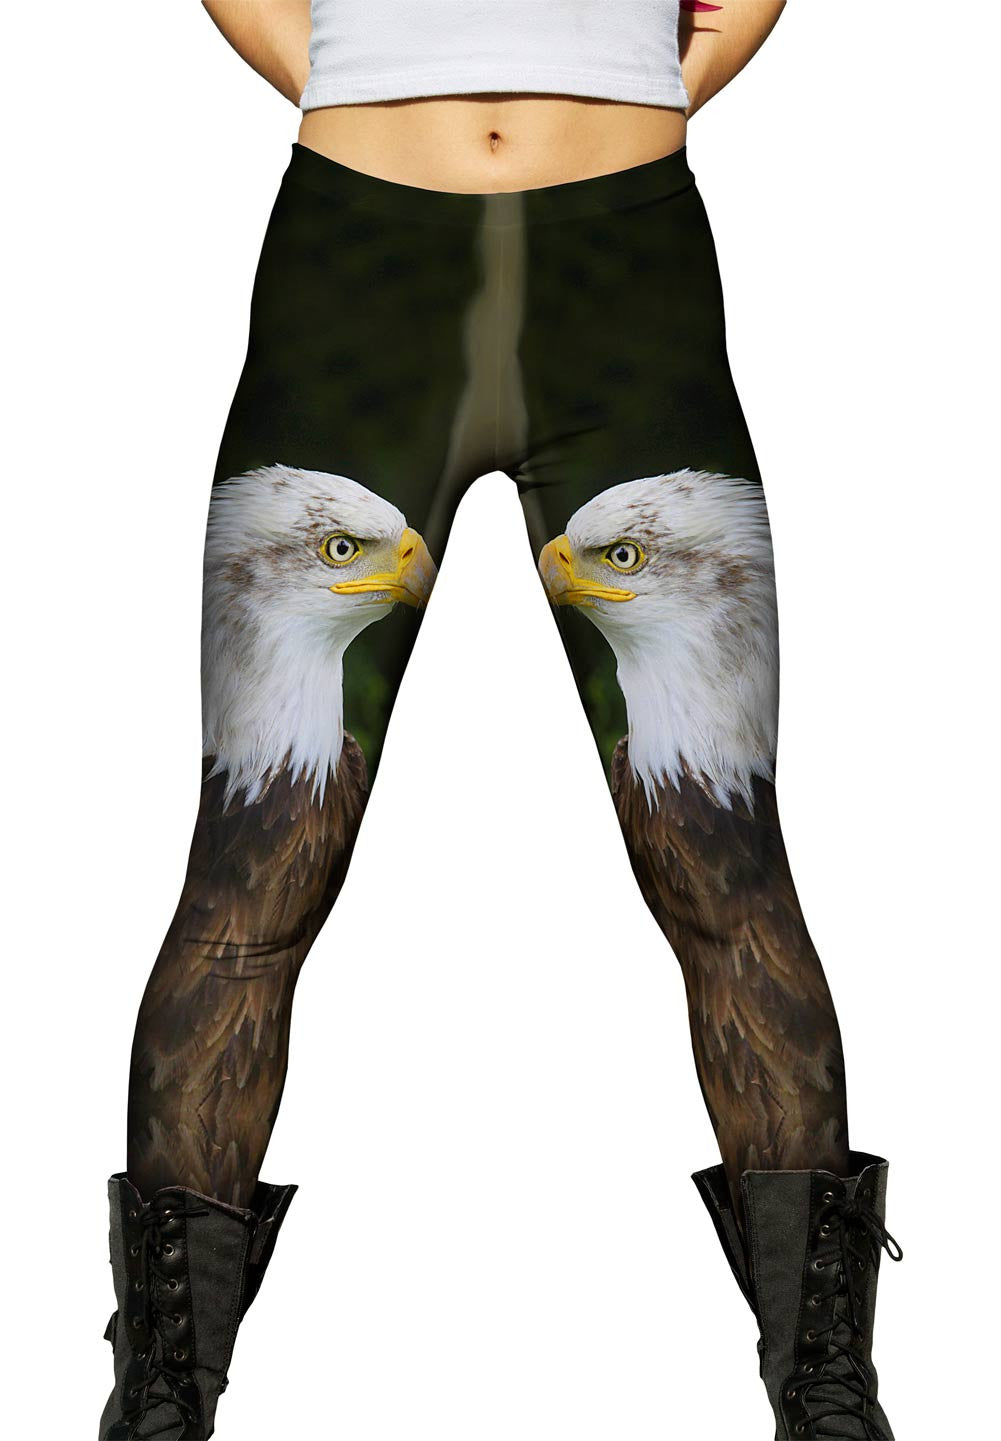 Bald eagle leggings